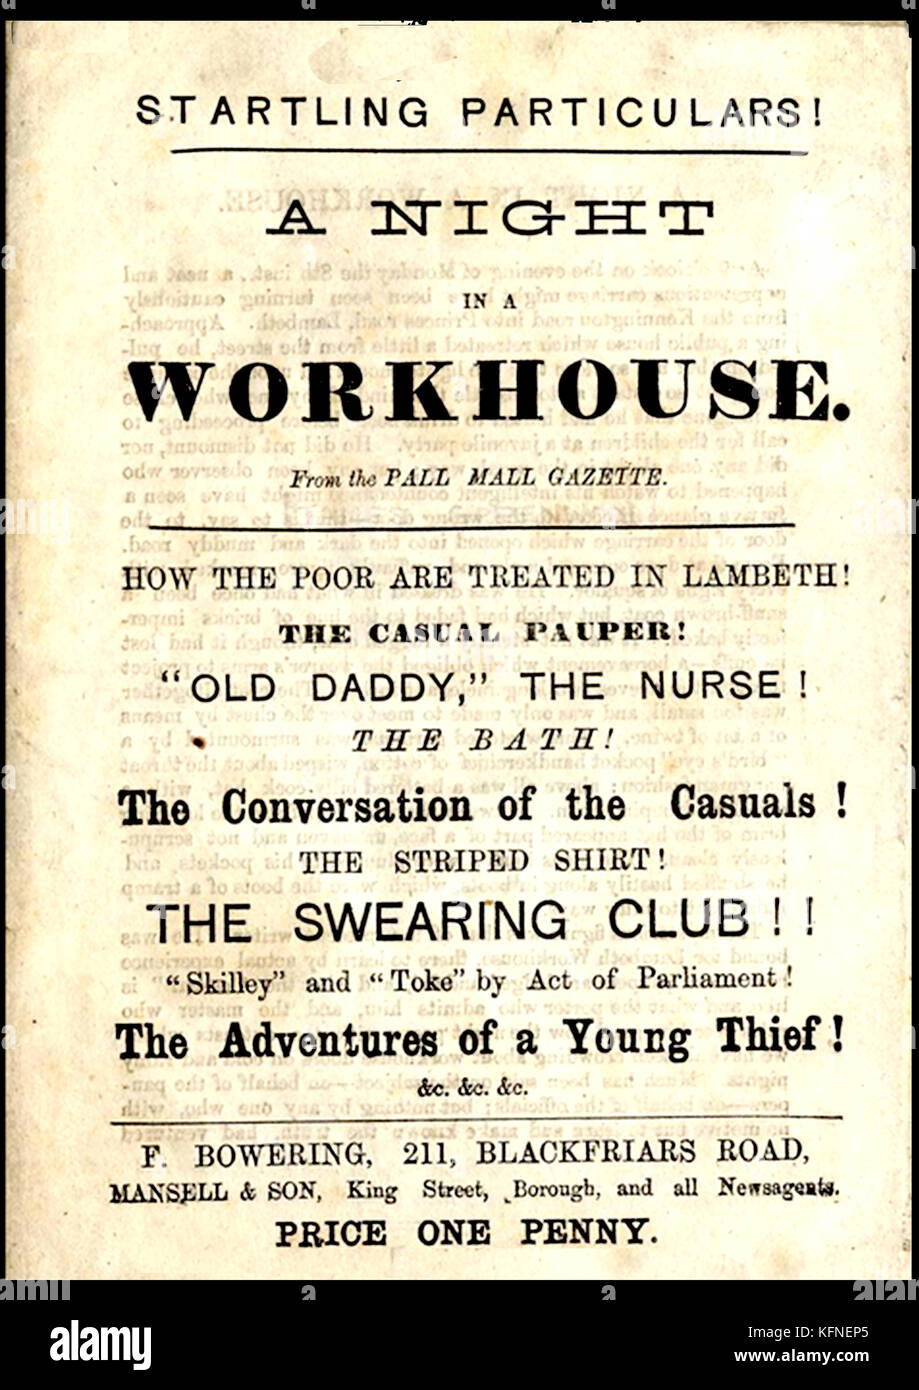 Un 19e siècle penny dreadful (brochure) à "une nuit dans le workhouse" (de la Pall Mall Gazette) exposant les horreurs de la workhouse anglais surtout à Lambeth, Londres Banque D'Images